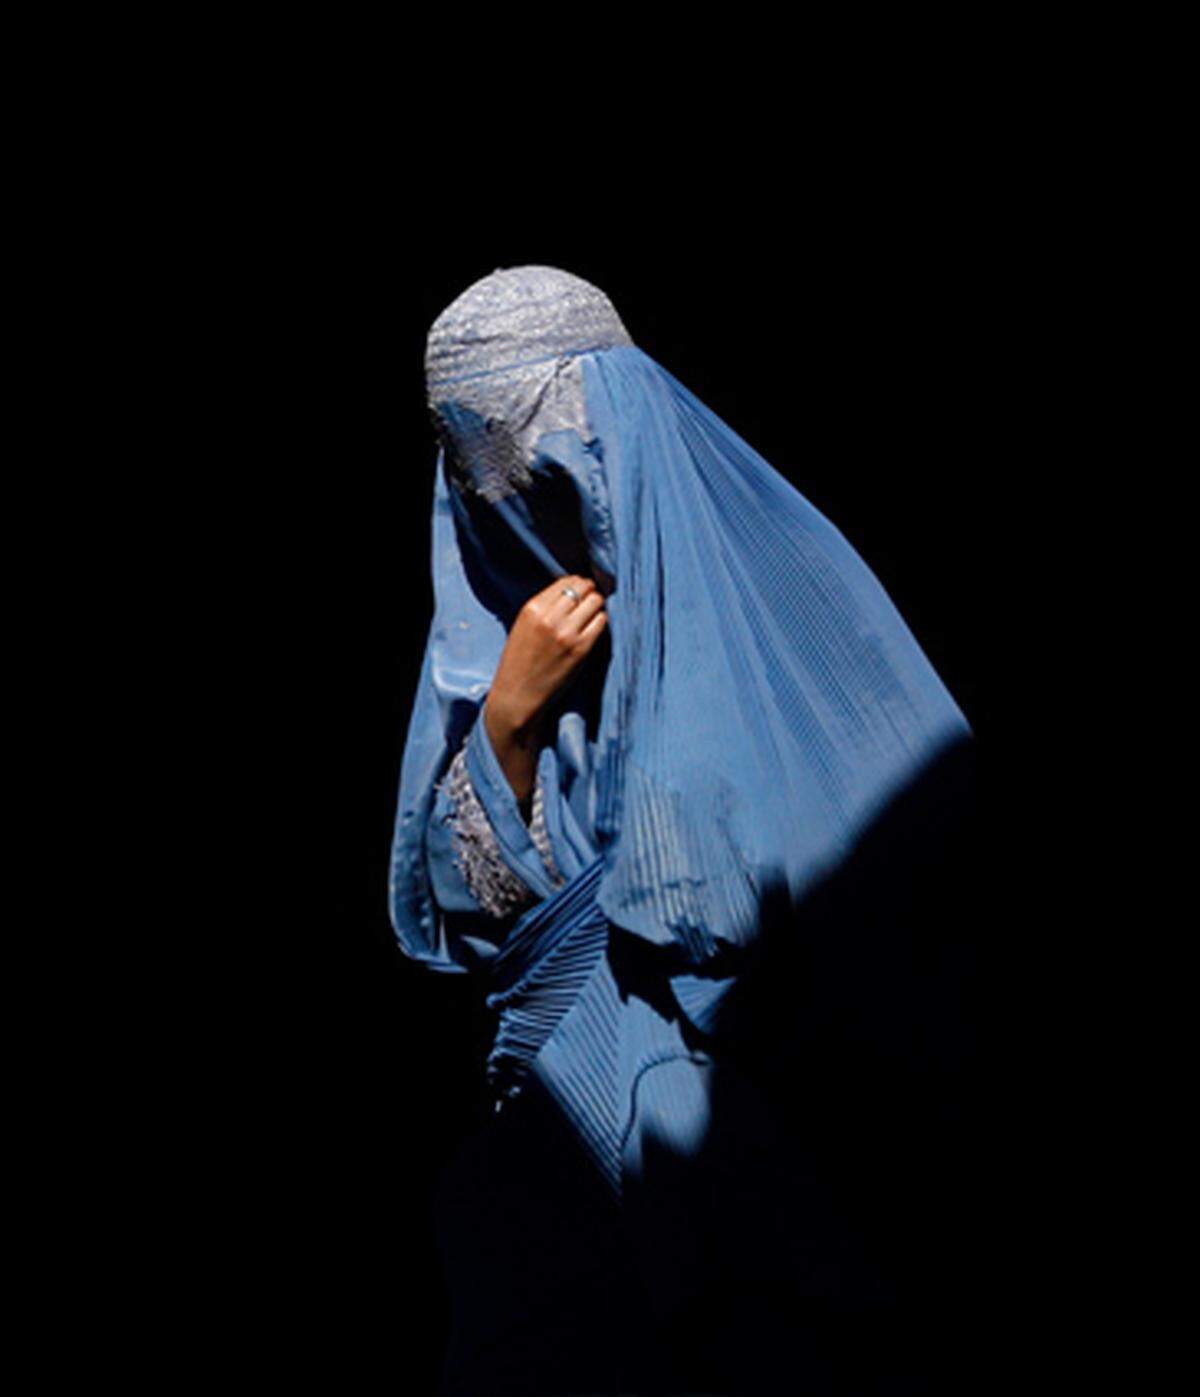 Die Ankündigung der FPÖ, einen Antrag auf ein Burkaverbot im Parlament einbringen zu wollen, hat eine neue Debatte ausgelöst. Bestärkt sieht sich die FPÖ durch ein Urteil des Europäischen Gerichtshofs für Menschenrechte, der das französische Gesetz gegen eine Vollverschleierung in der Öffentlichkeit für zulässig erklärt hatte.Weiter: Hijab, Niqab, Burka - Traditionelle Bekleidungsformen ilsamischer FrauenQuelle: APA